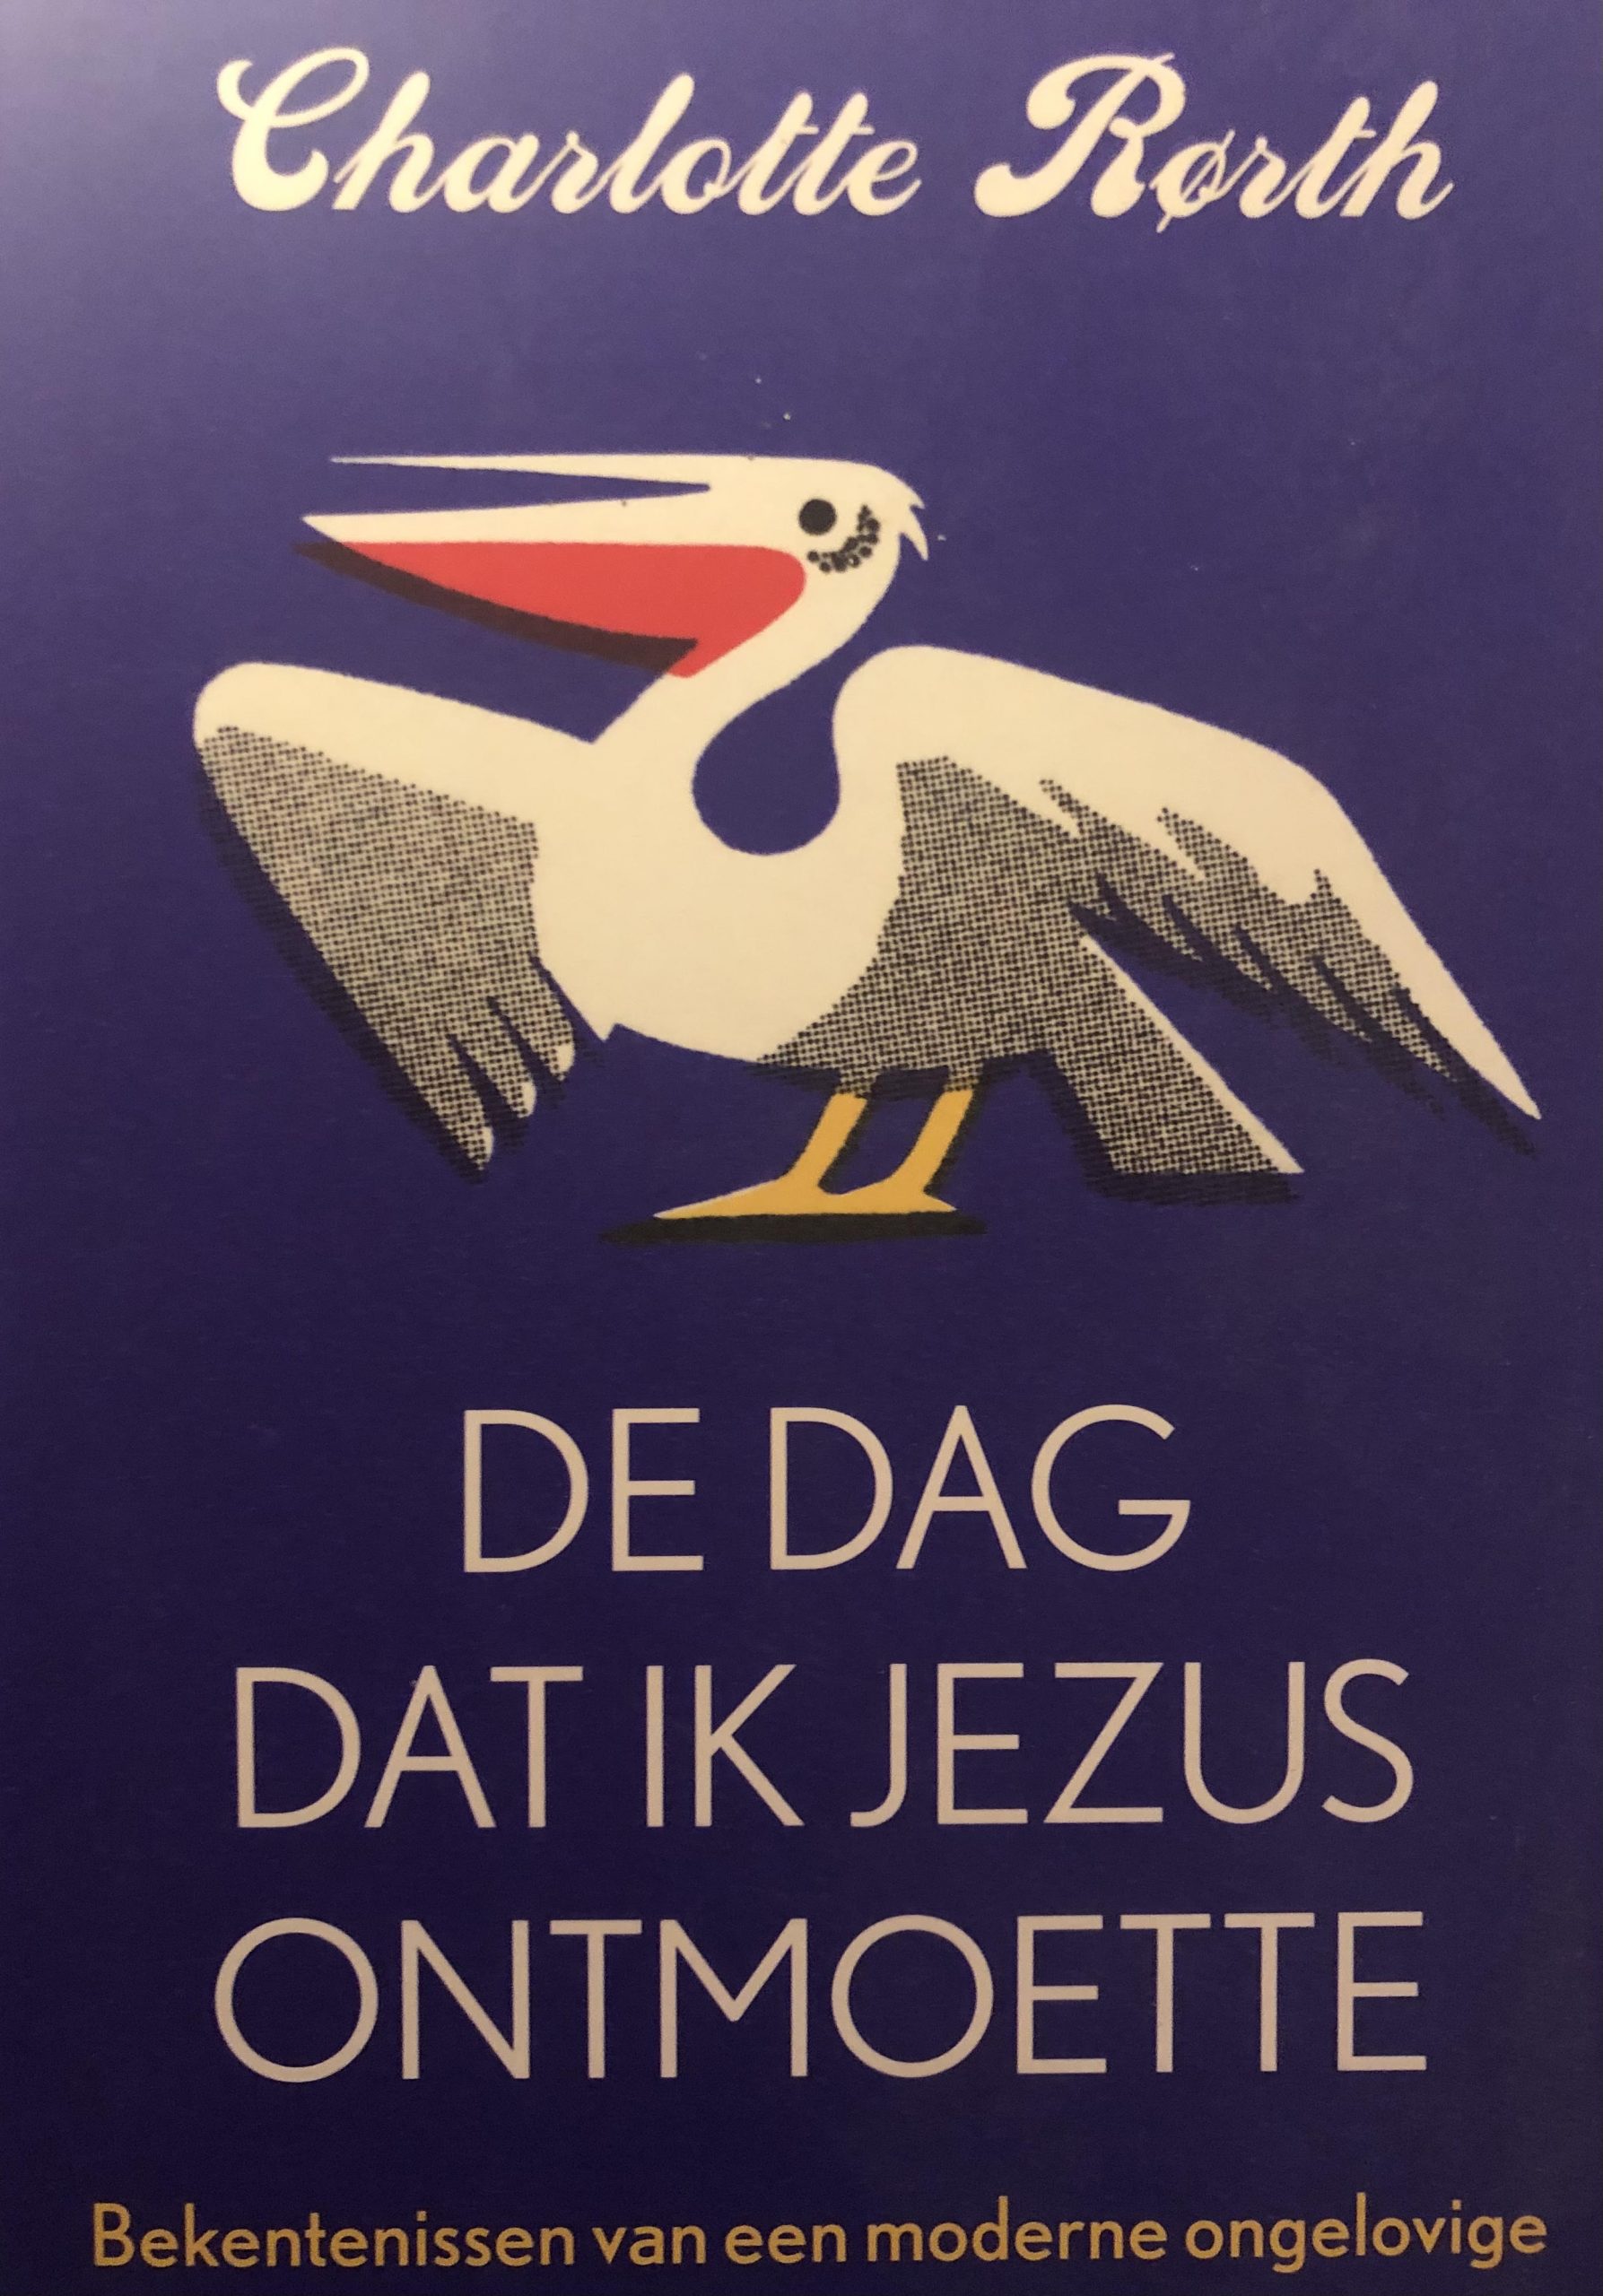 Jeg mødte Jesus Holland